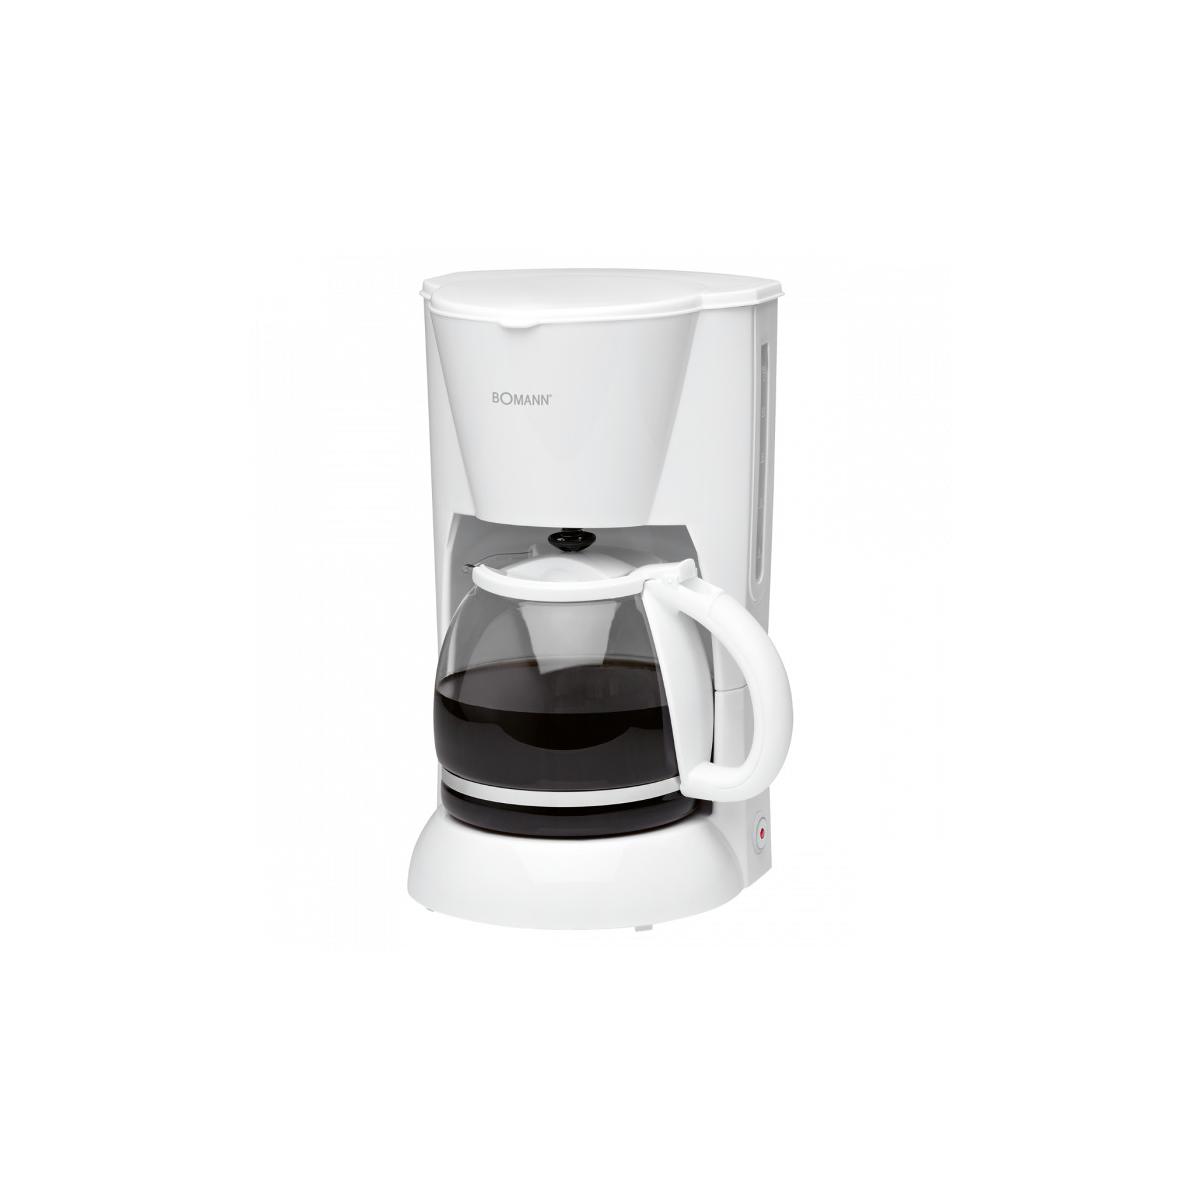 Bomann KA 183 CB Brombeer Filter-Kaffeemaschine 1,5 l Fassungsvermögen 